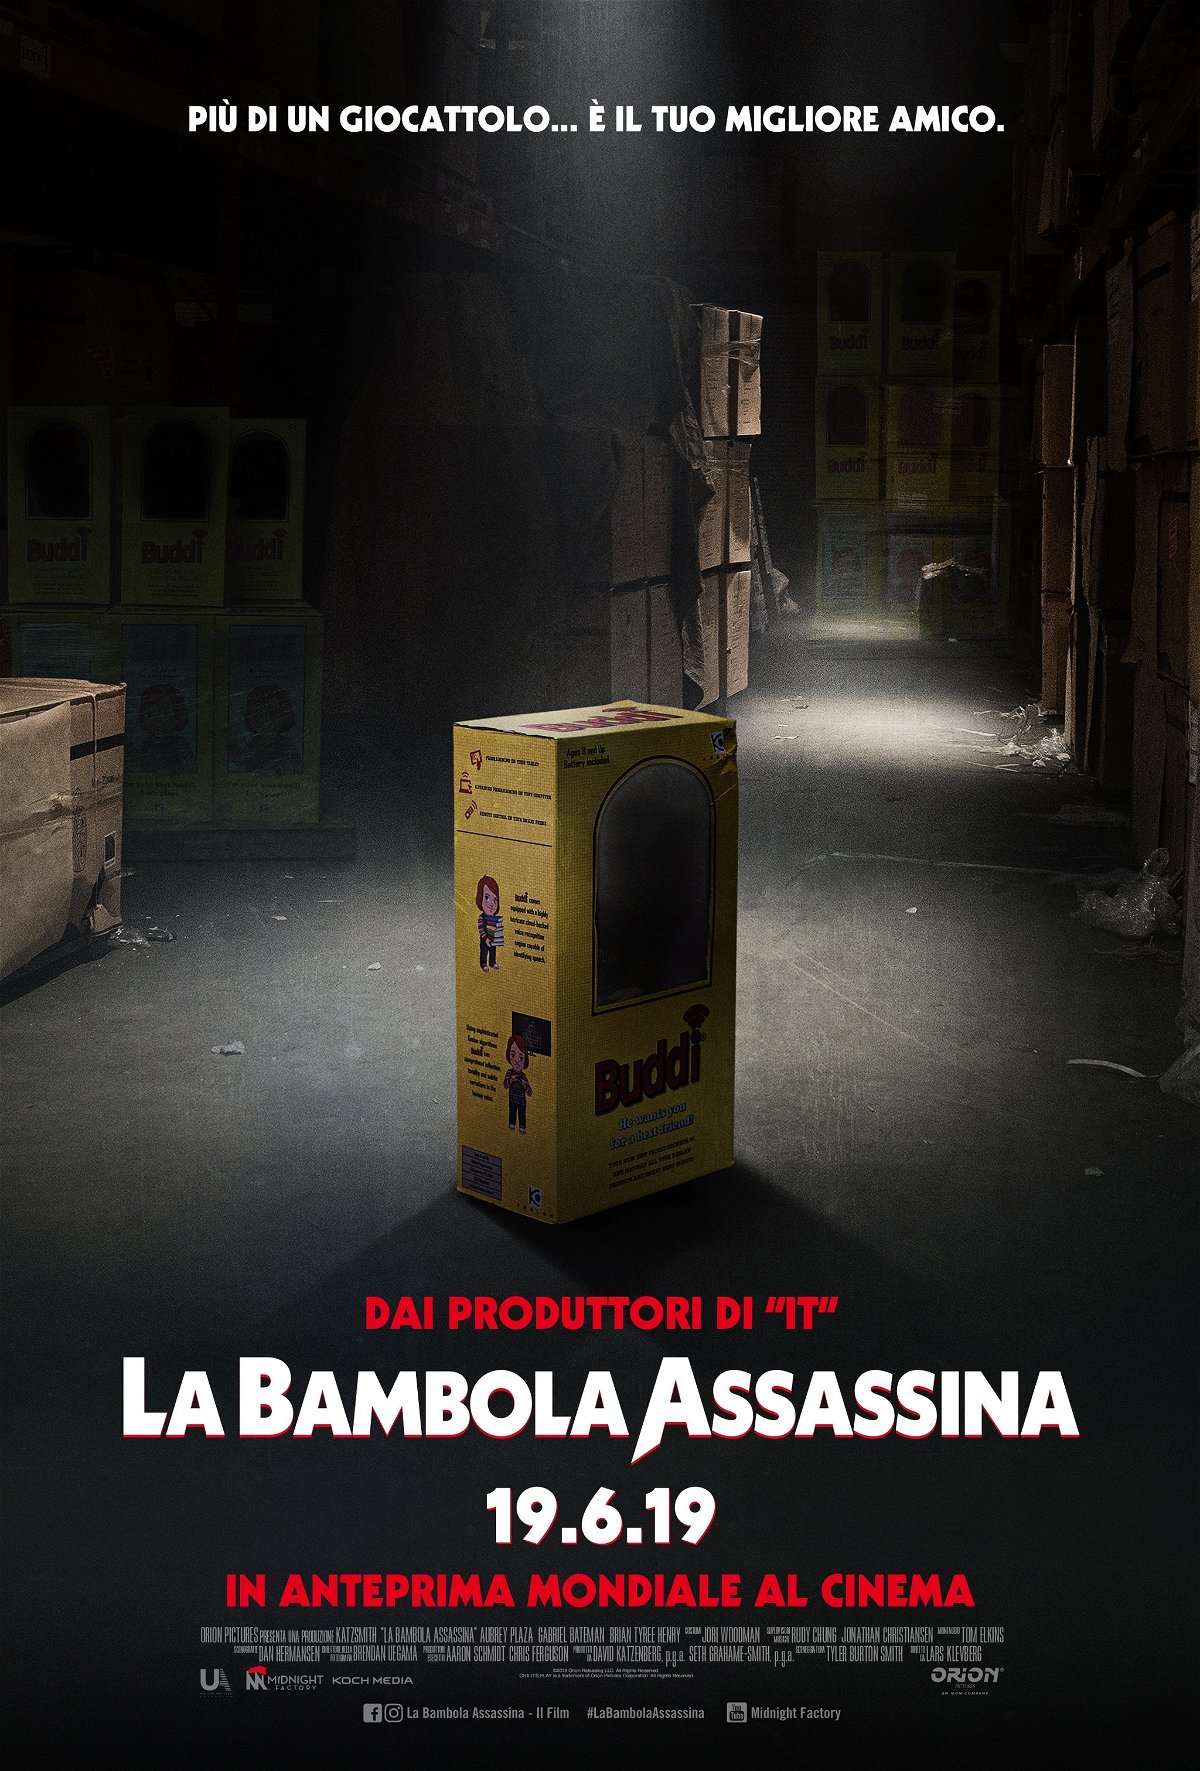 Il reboot de La bambola assassina arriverà in Italia in anteprima mondiale